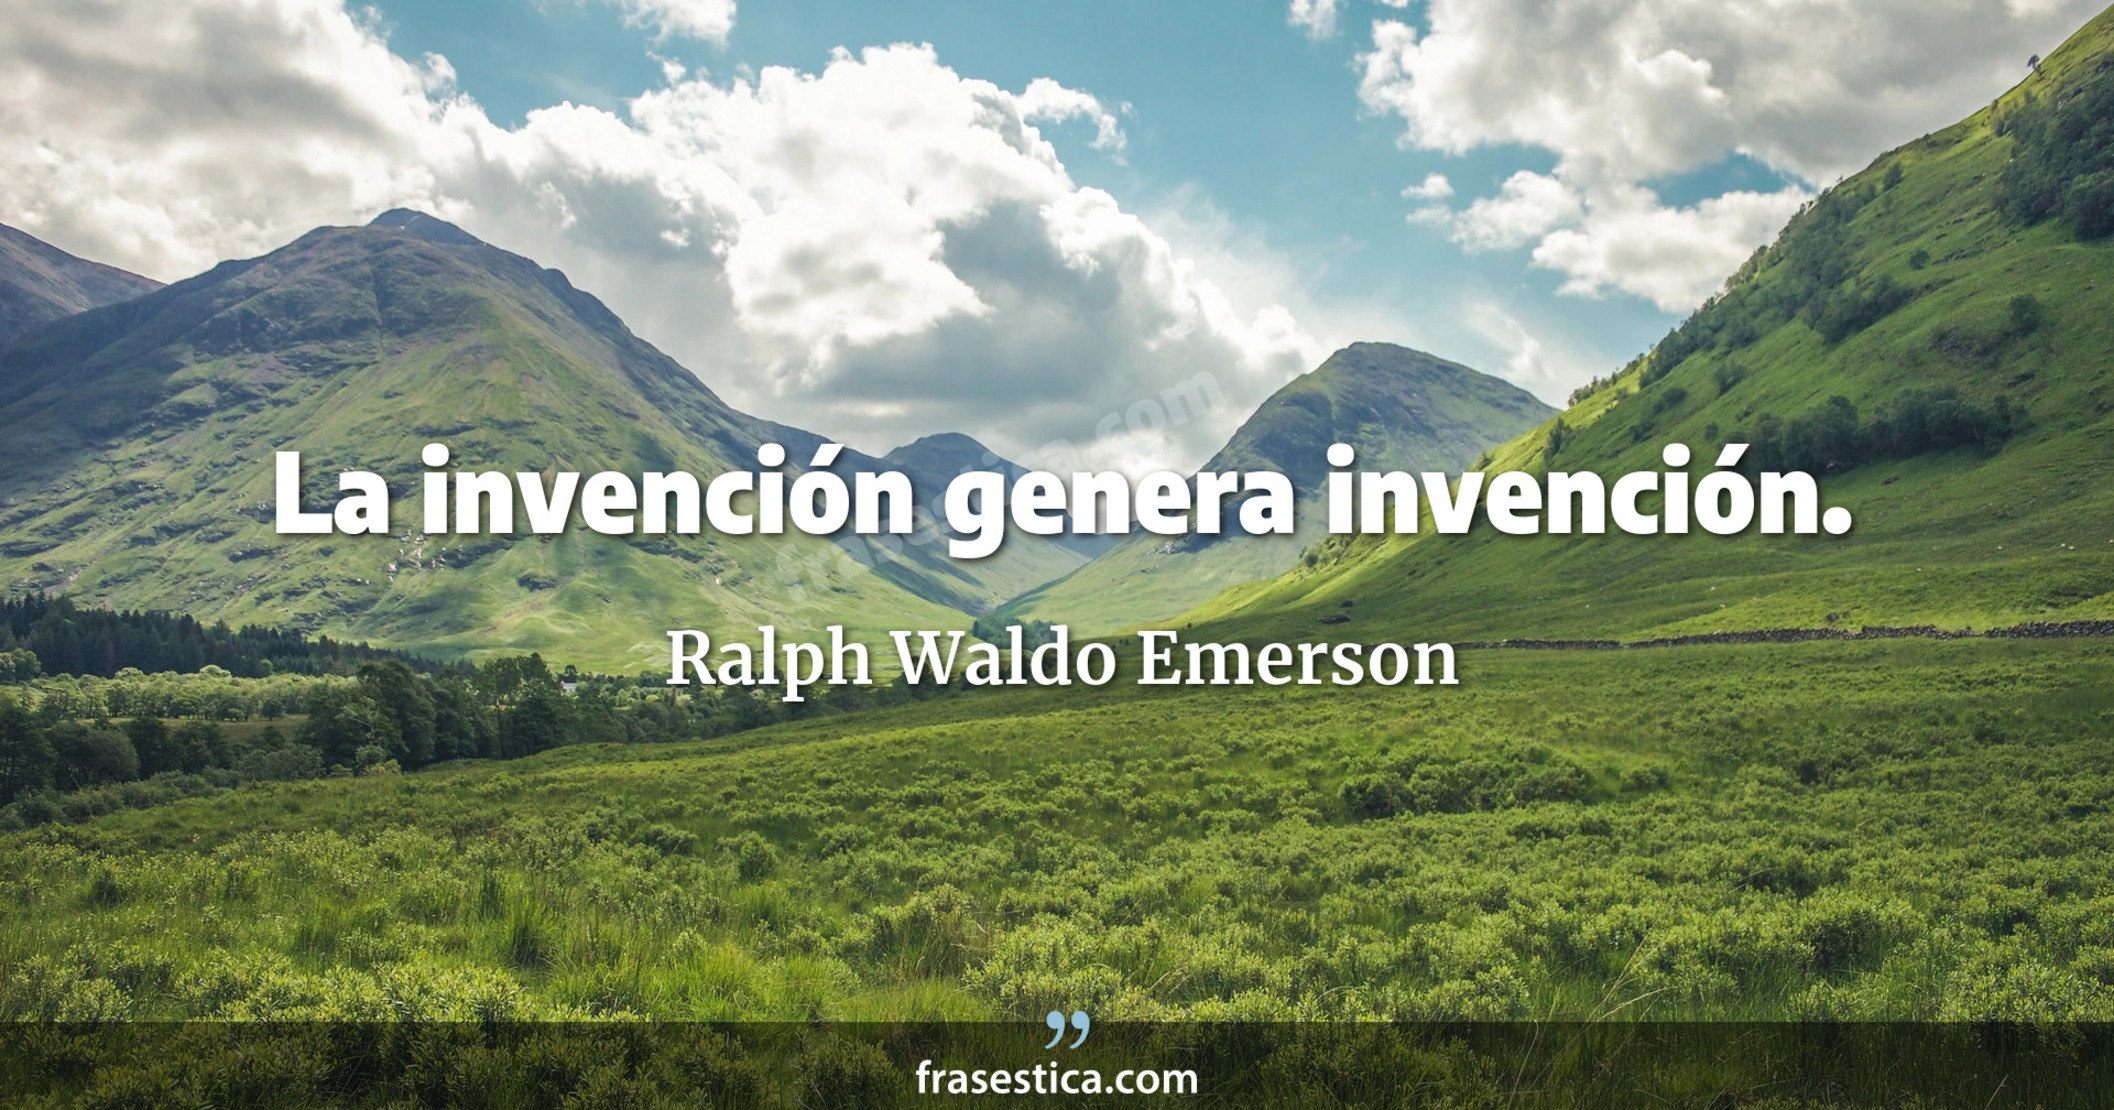 La invención genera invención. - Ralph Waldo Emerson